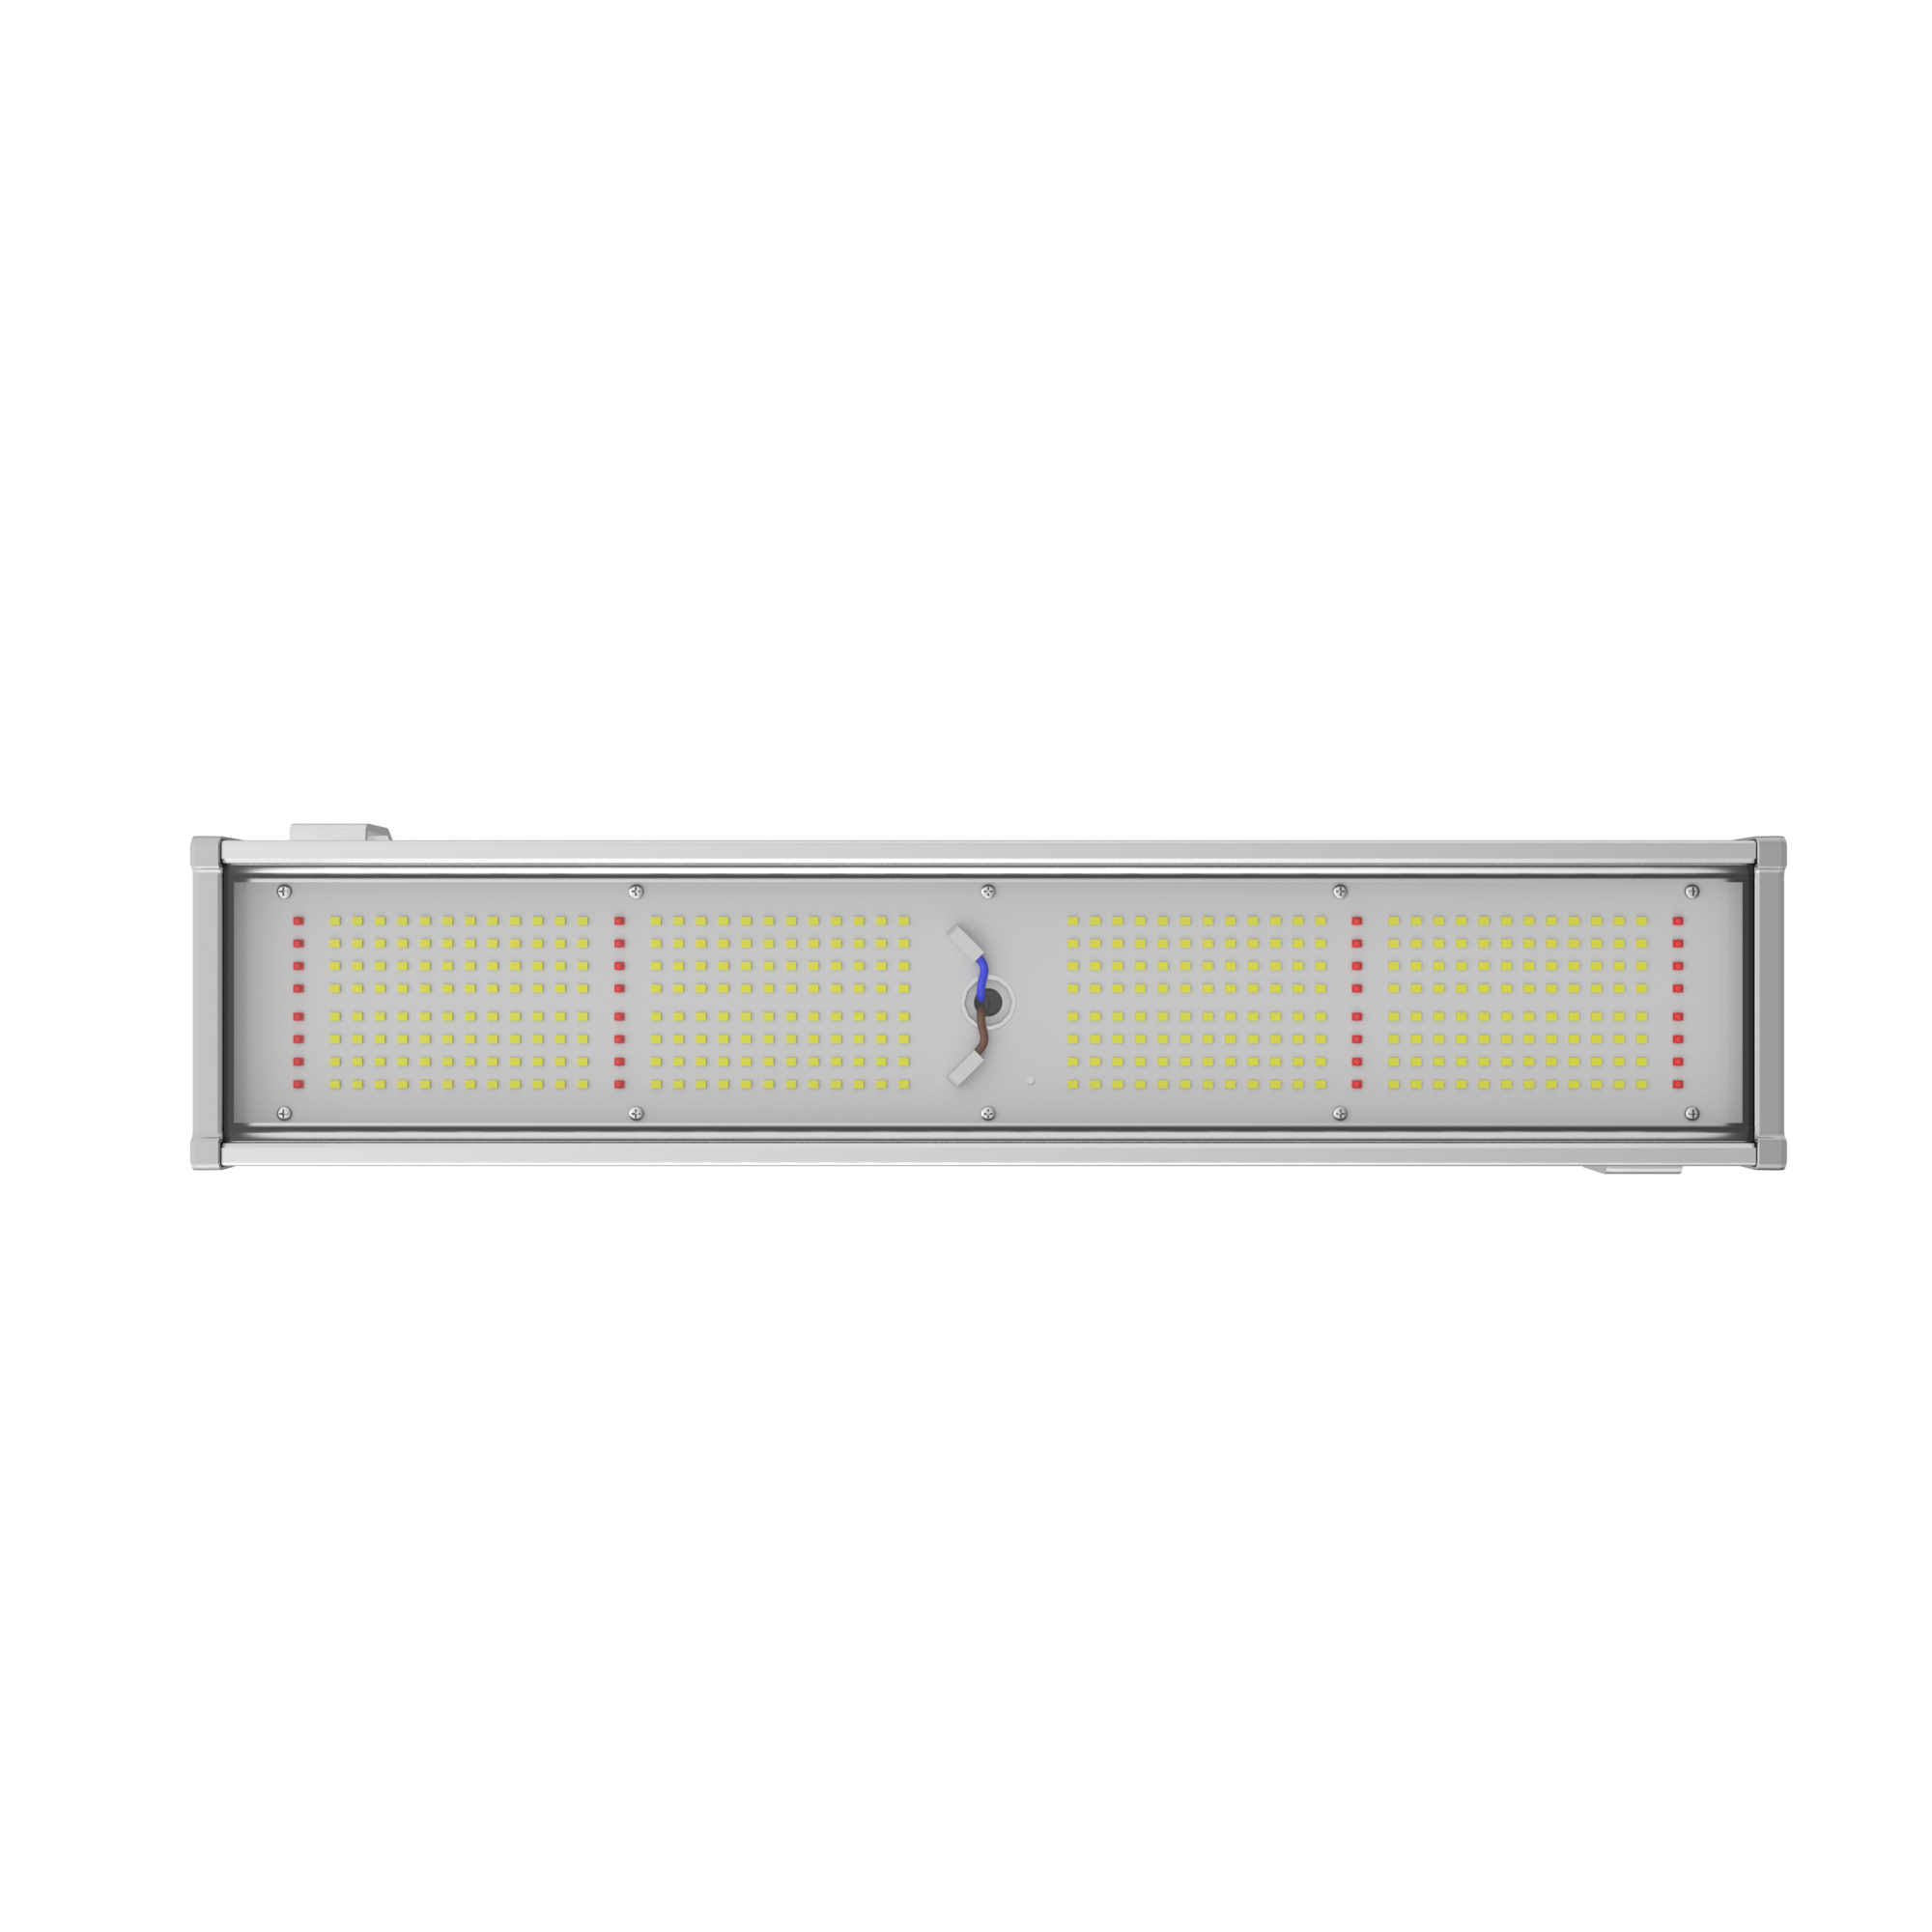 Hanf Lampen 2er Set – LED-Beleuchtung für Cannabispflanzen, Pflanzen- und Gemüsezucht Dimmbar mit Steuerungssoftware